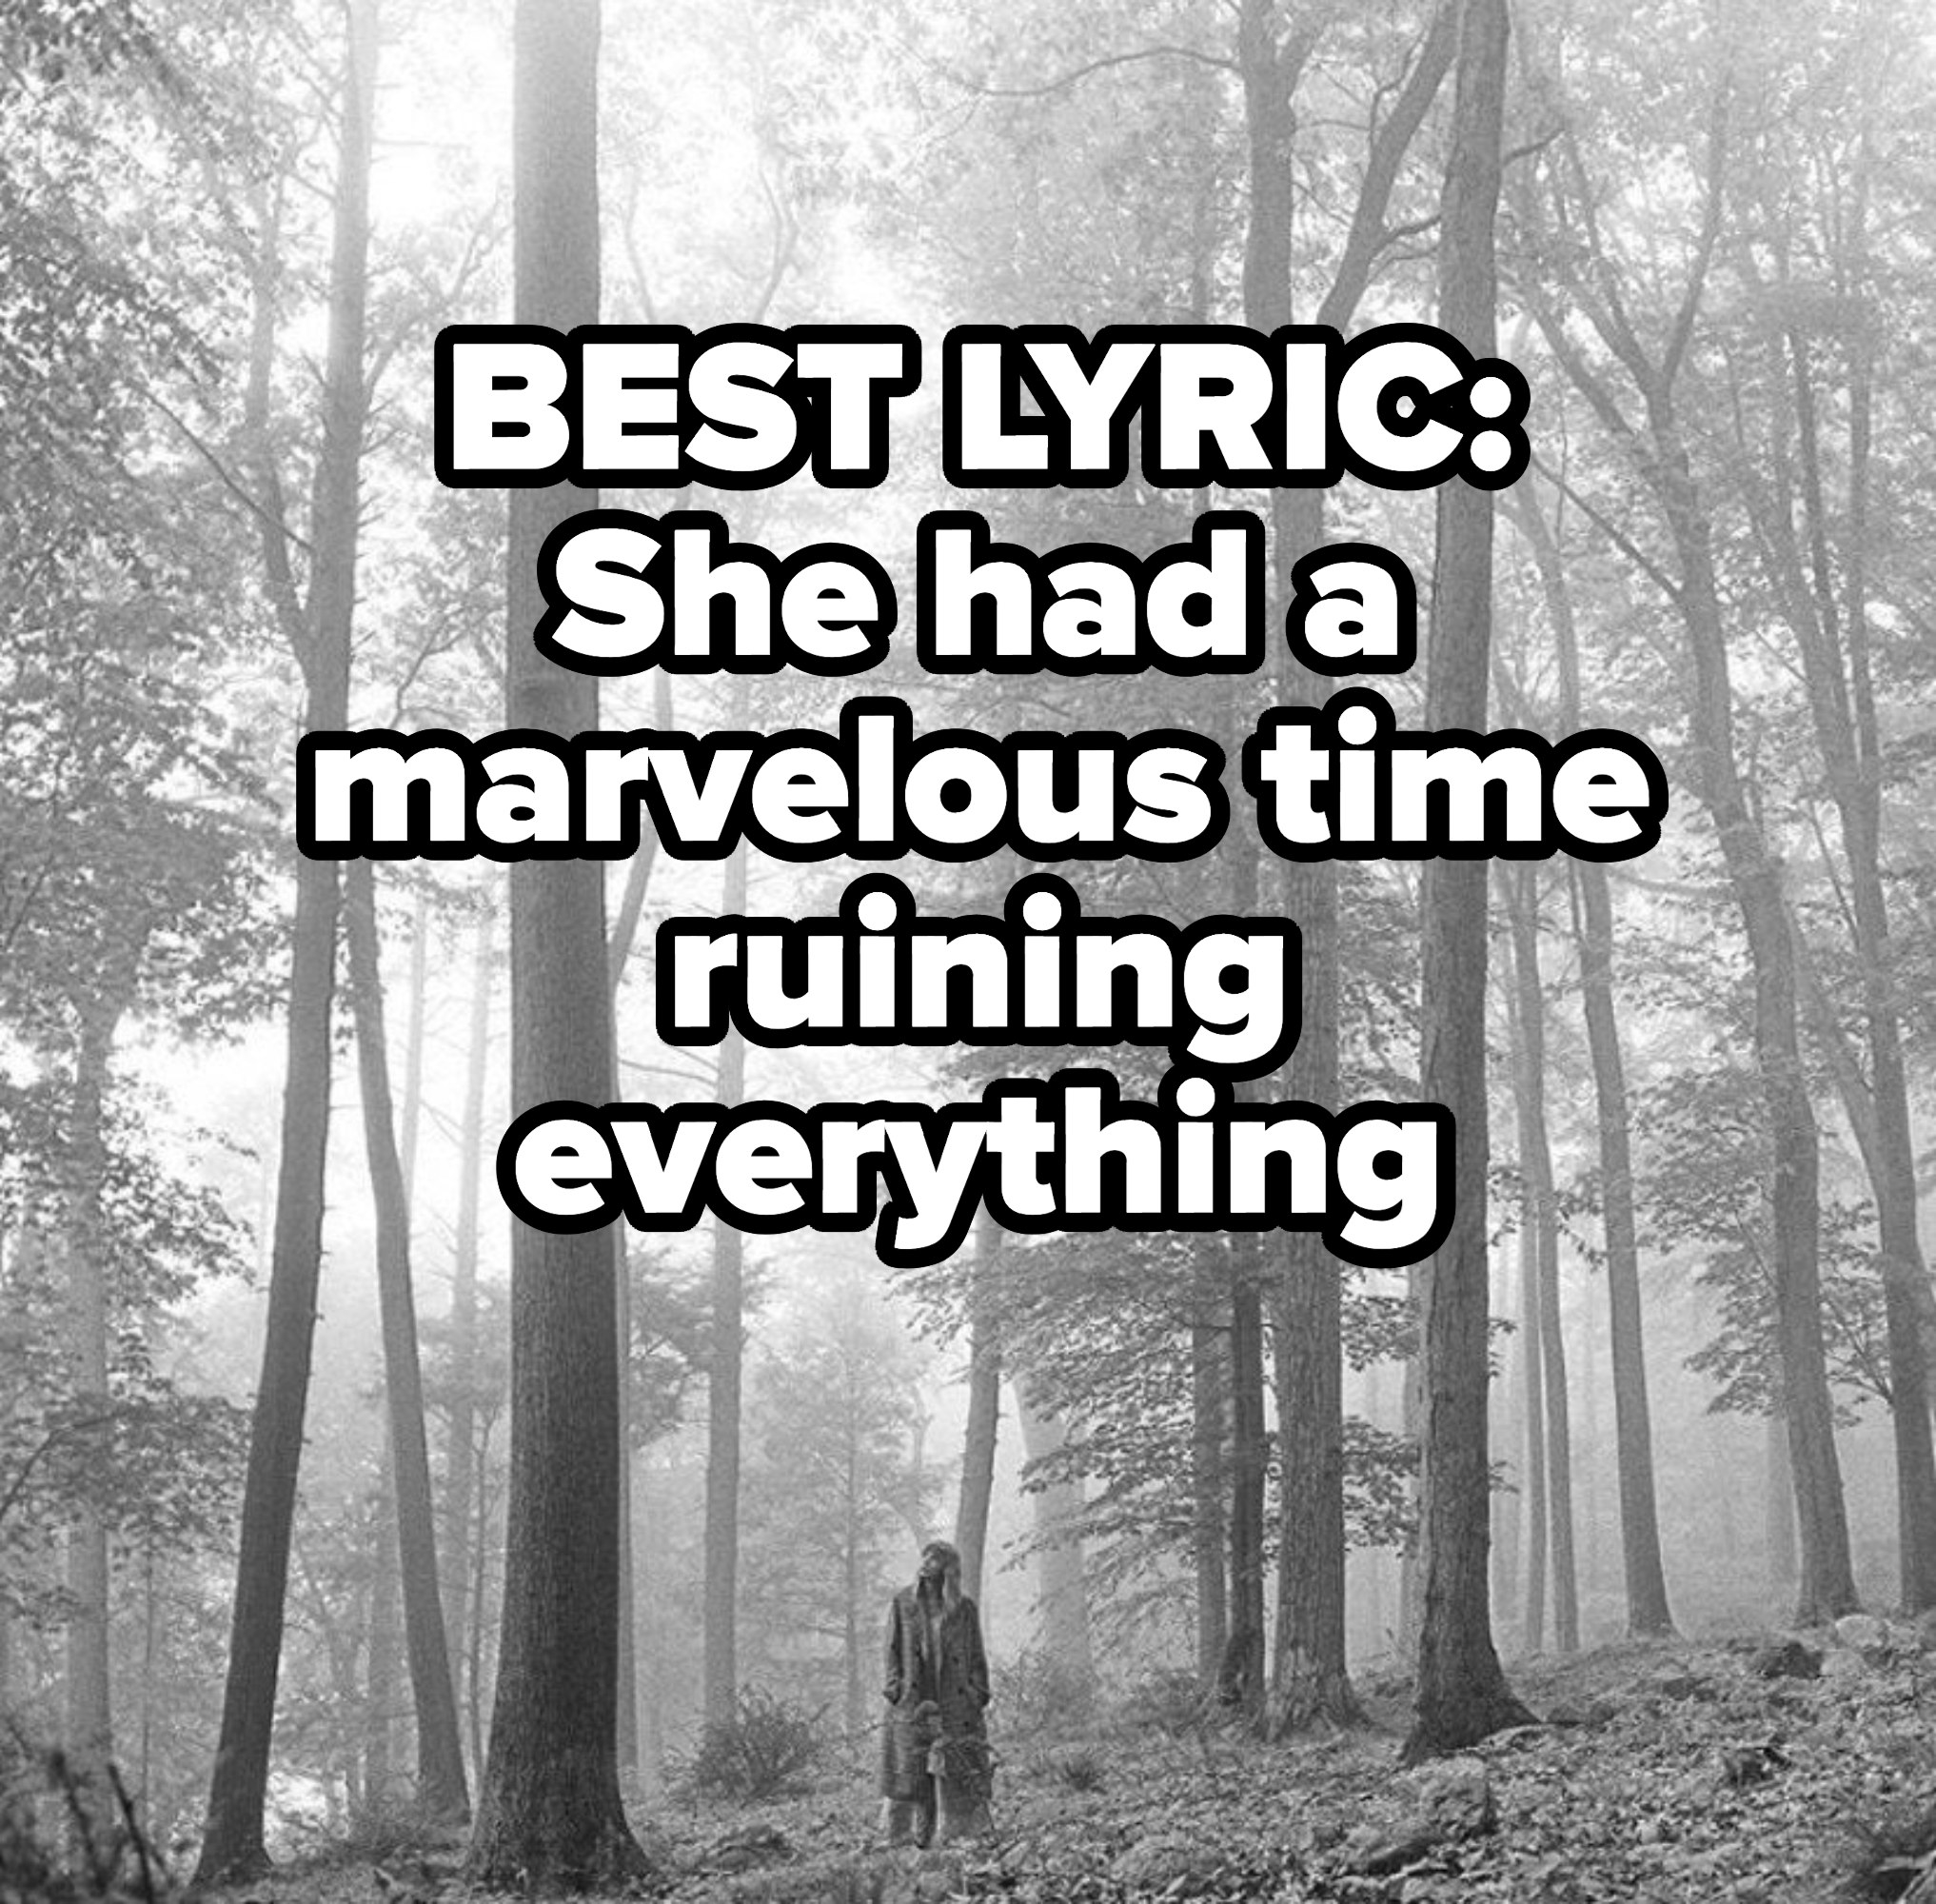 最佳歌词:她有一个奇妙的时间毁了一切